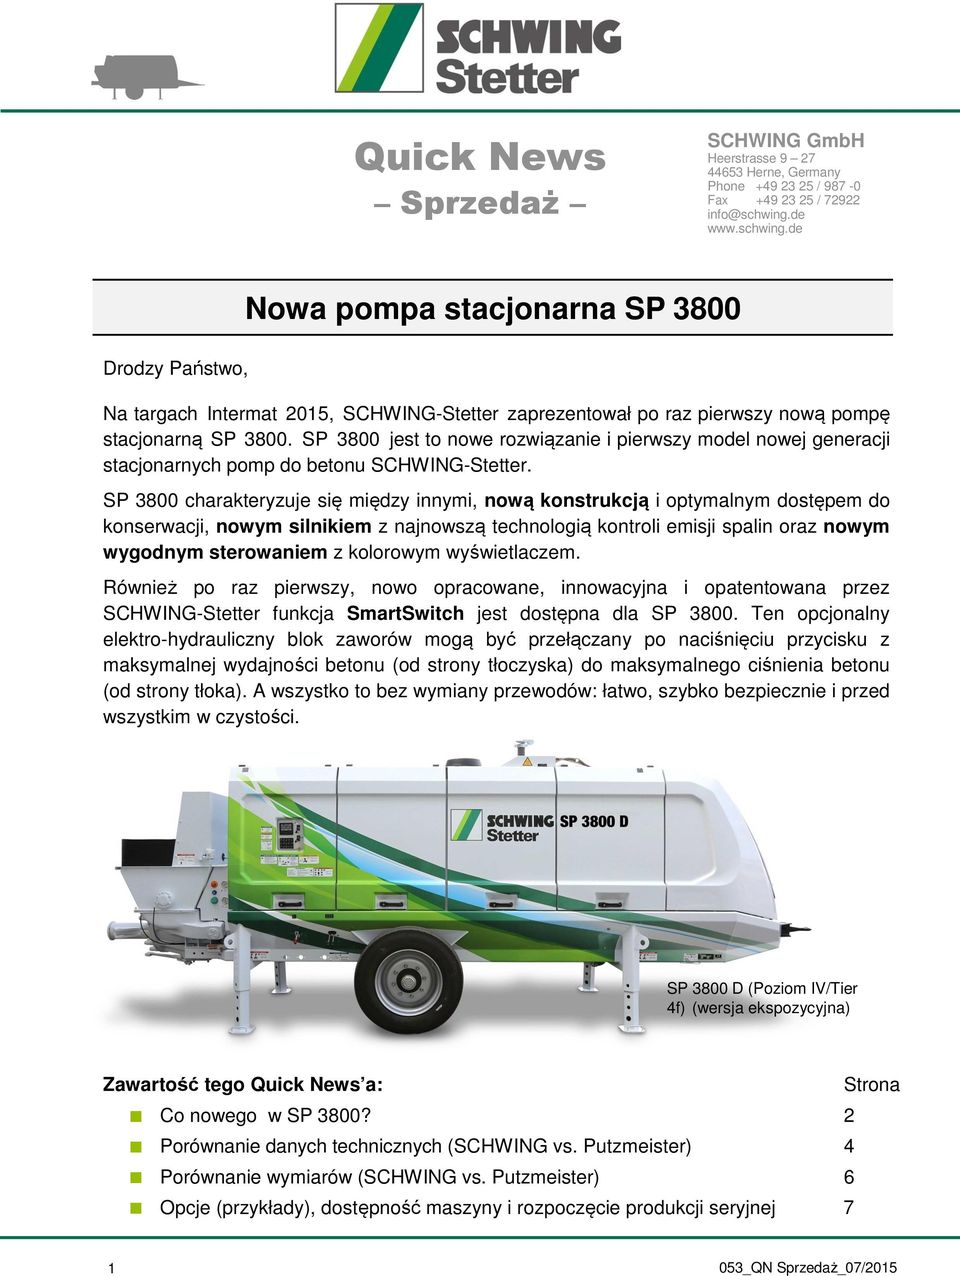 SP 3800 jest to nowe rozwiązanie i pierwszy model nowej generacji stacjonarnych pomp do betonu SCHWING-Stetter.